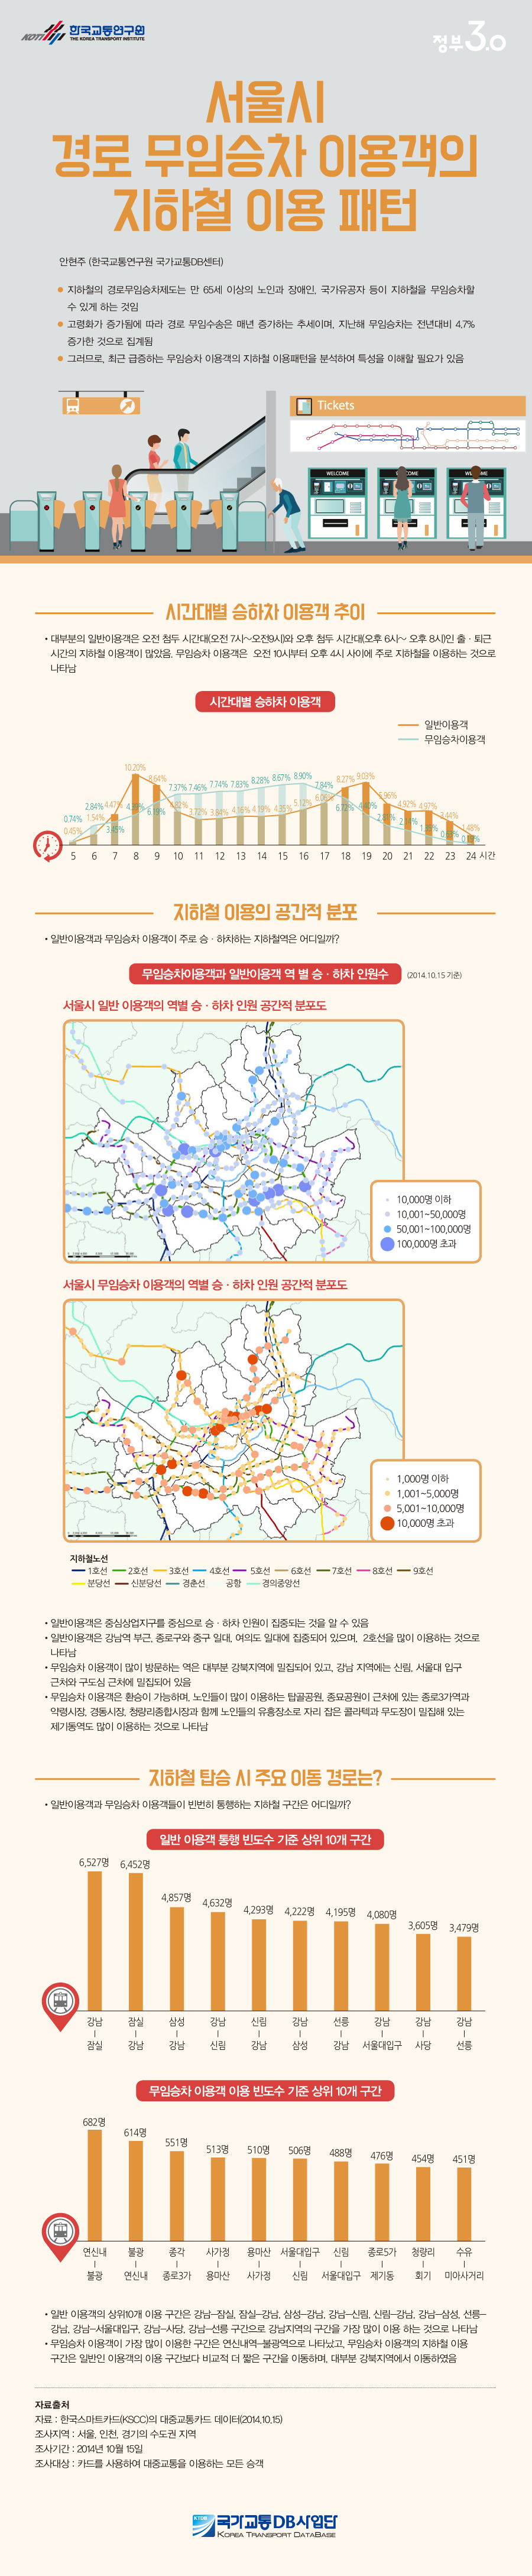 서울시 경로 무임승차 이용객의 지하철 이용 패턴  이미지